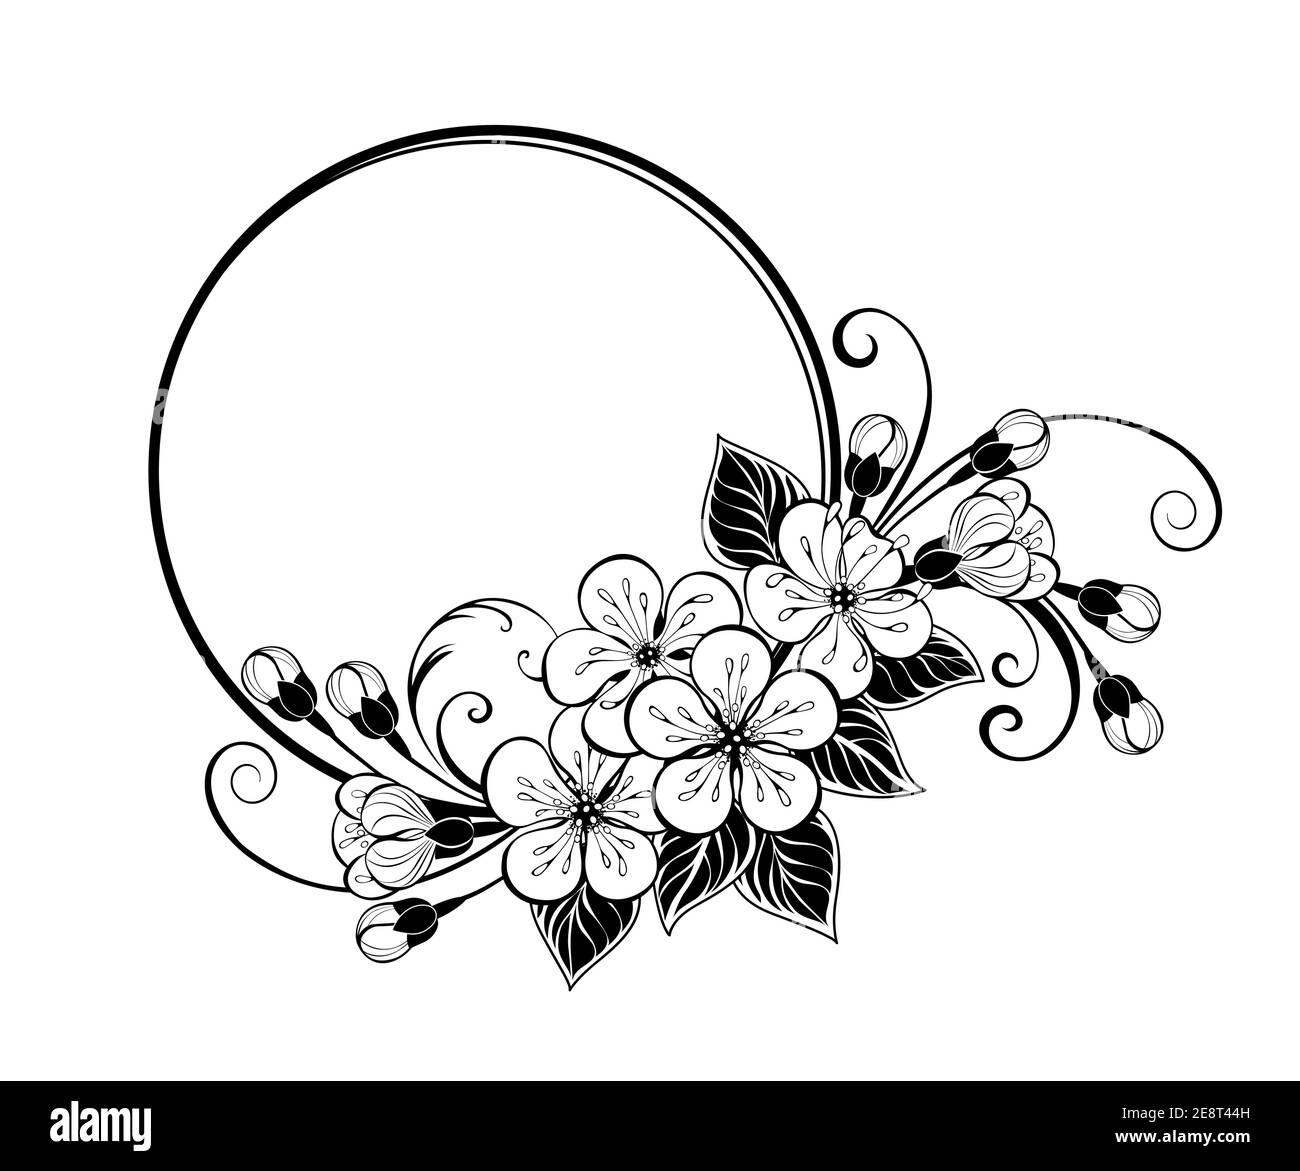 Cornice rotonda, decorata con contorni, disegnata artisticamente fiori sakura su sfondo bianco. Colorazione. Ciliegia giapponese in fiore. Illustrazione Vettoriale